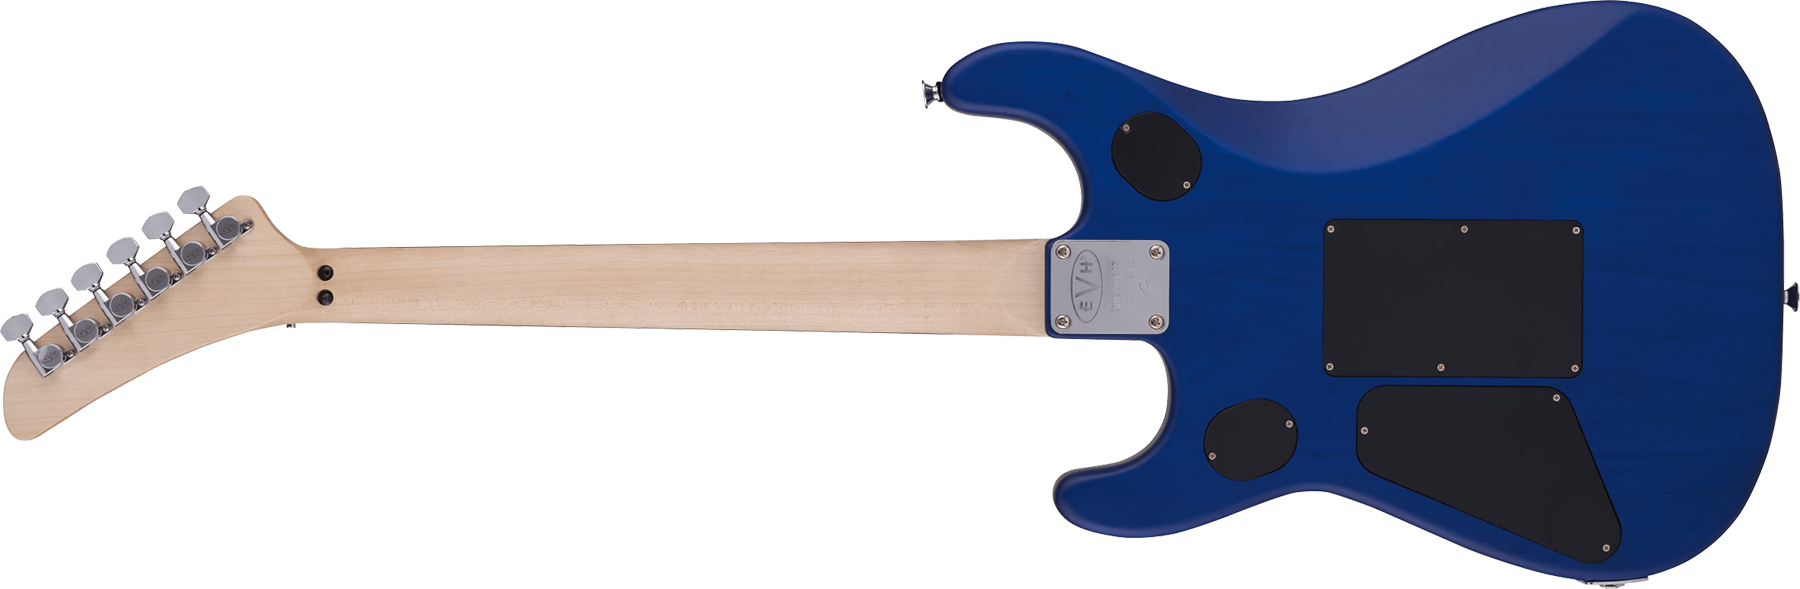 Evh 5150 Deluxe Poplar Burl Mex 2h Fr Eb - Aqua Burst - Guitarra eléctrica con forma de str. - Variation 1